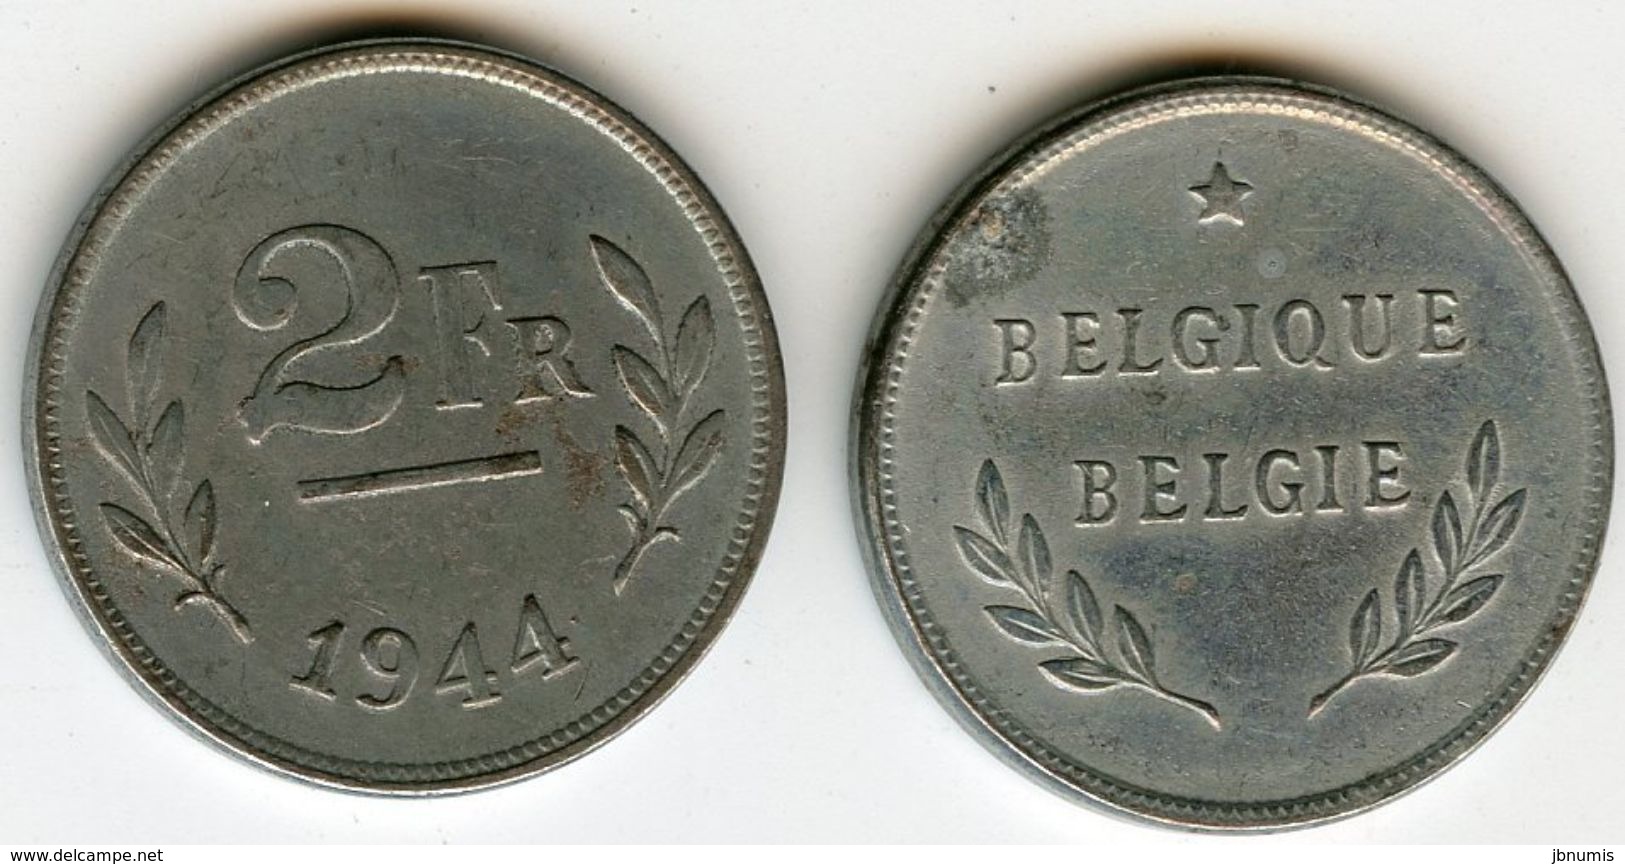 Belgique Belgium 2 Francs 1944 Belgique-Belgie KM 133 - 2 Francs (1944 Libération)